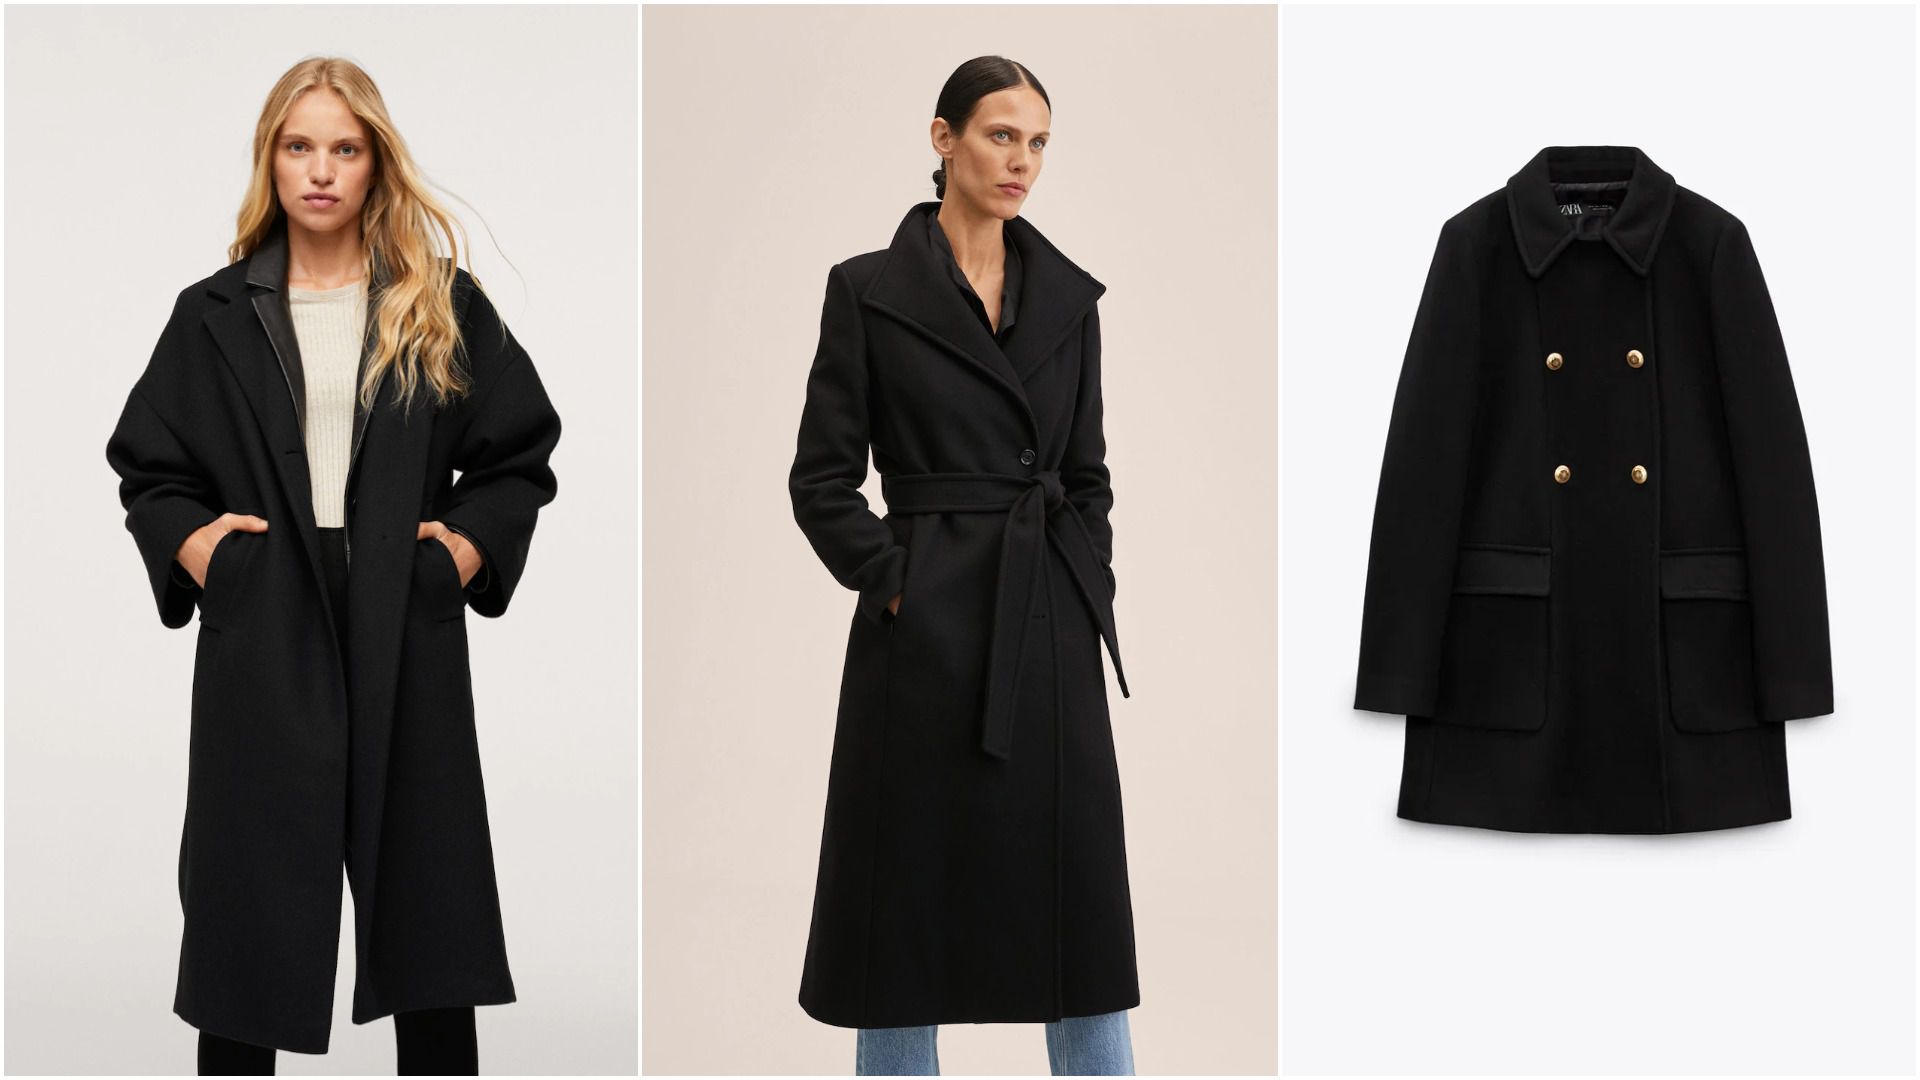 Crni kaput zimski je klasik: Jednom kad ga dodate u kolekciju, nosit ćete ga godinama!